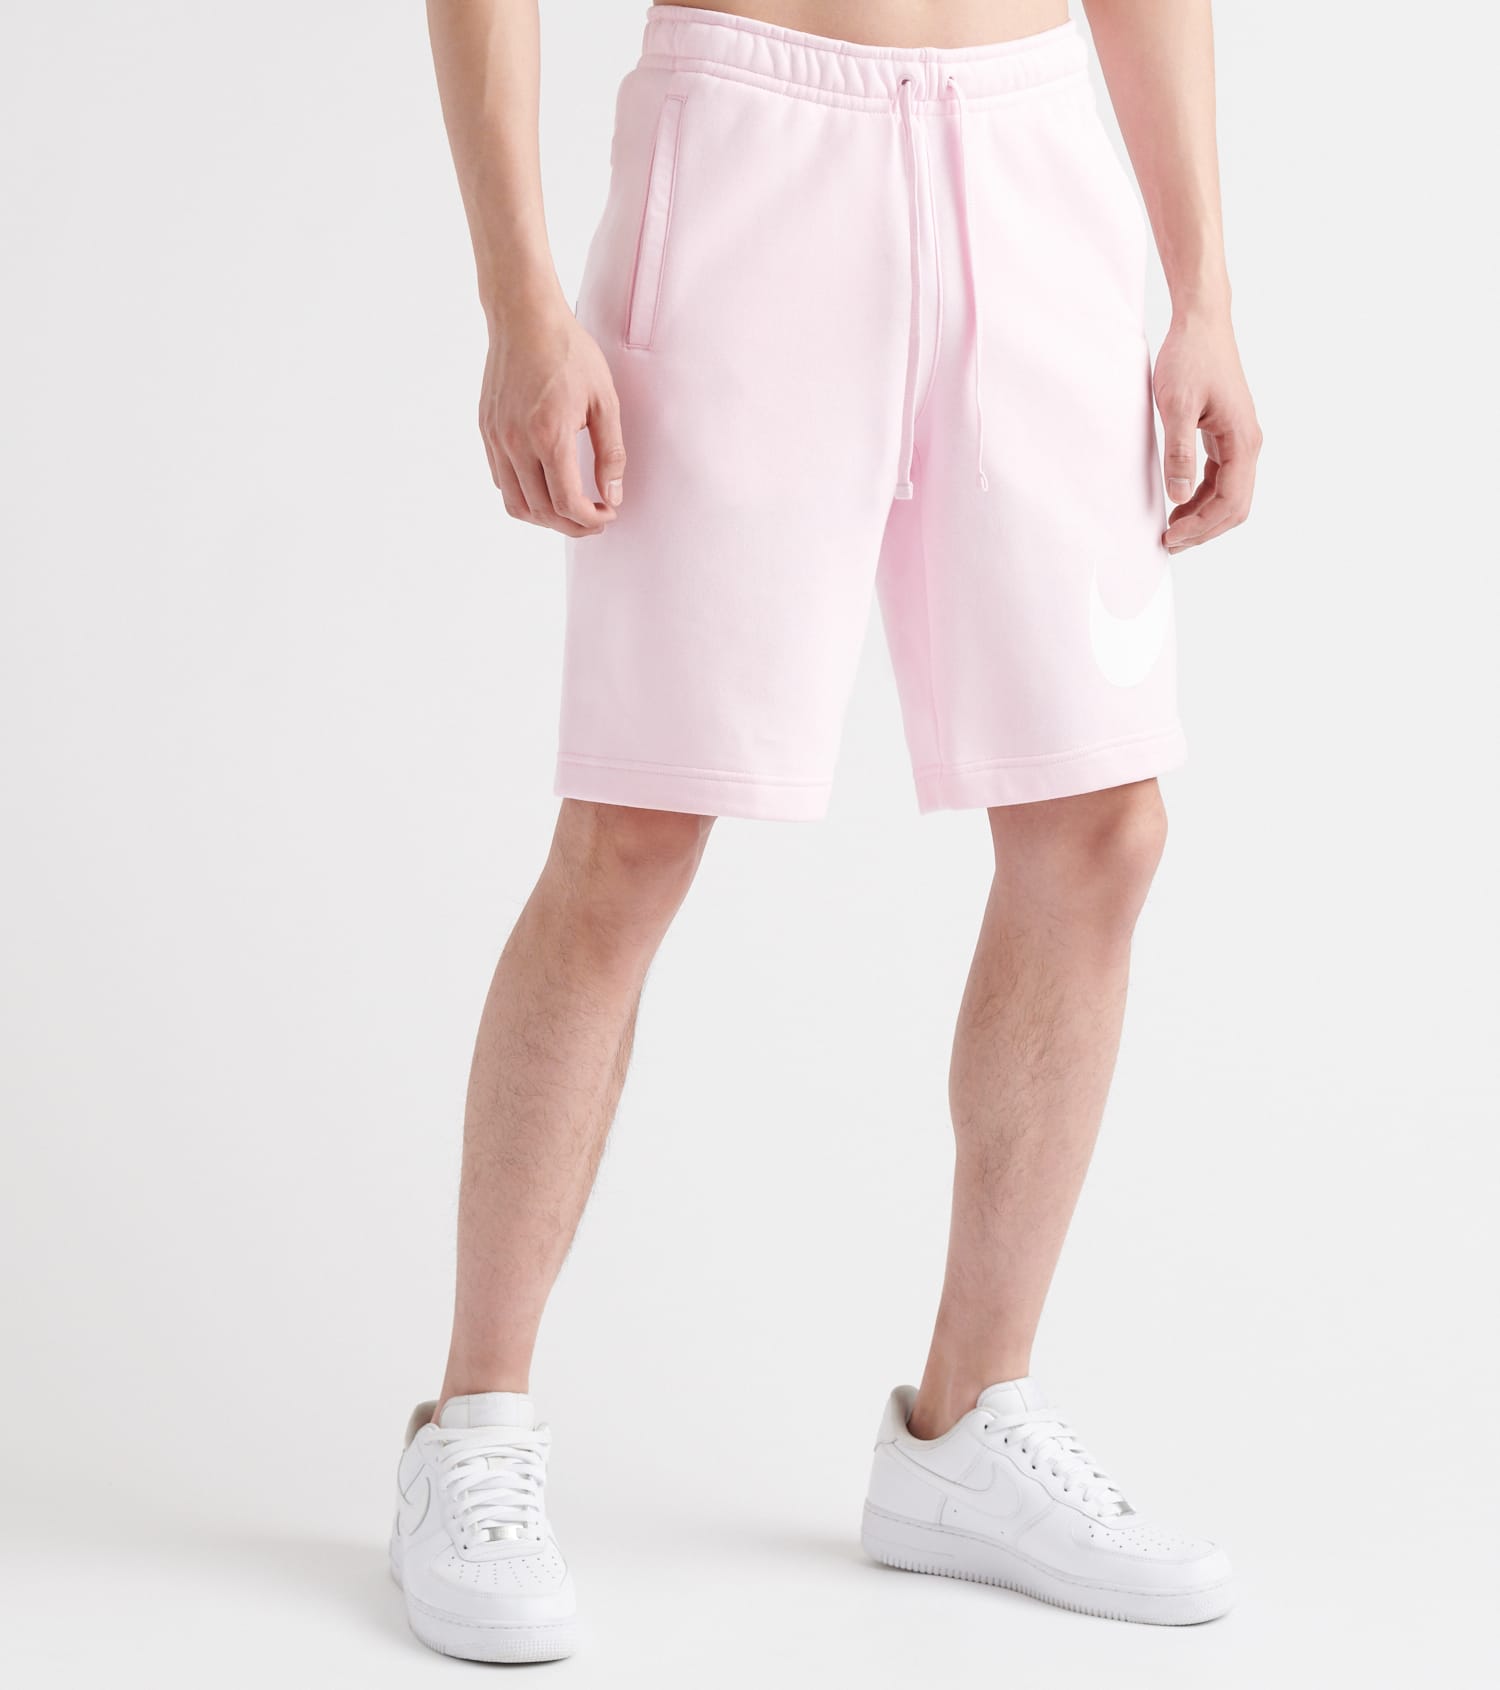 mens nike shorts pink